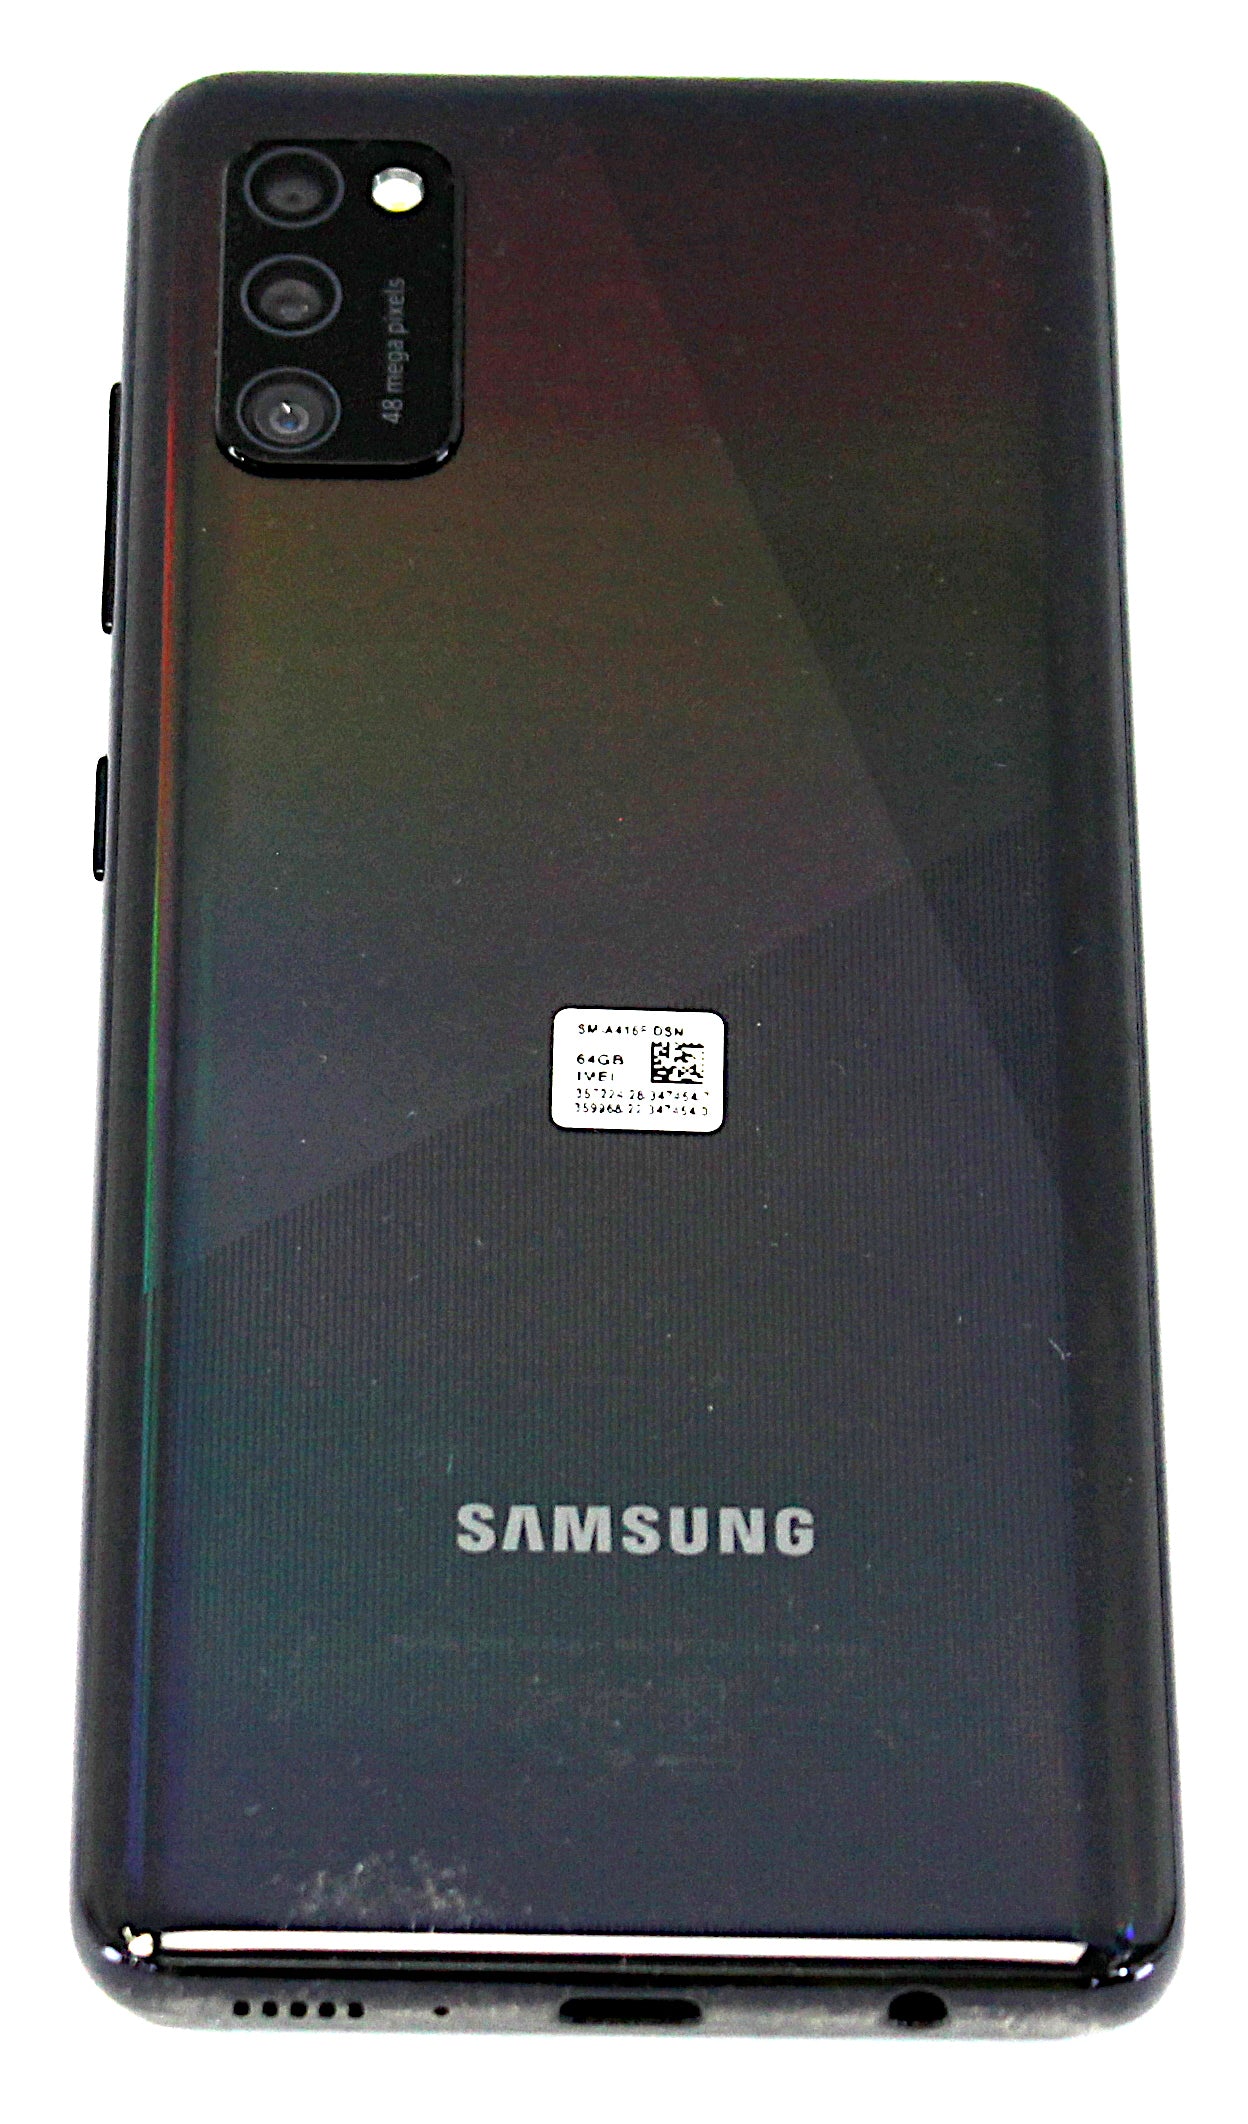 Samsung Galaxy A41 Smartphone, 64GB, Network Unlocked, Black, SM-A415F